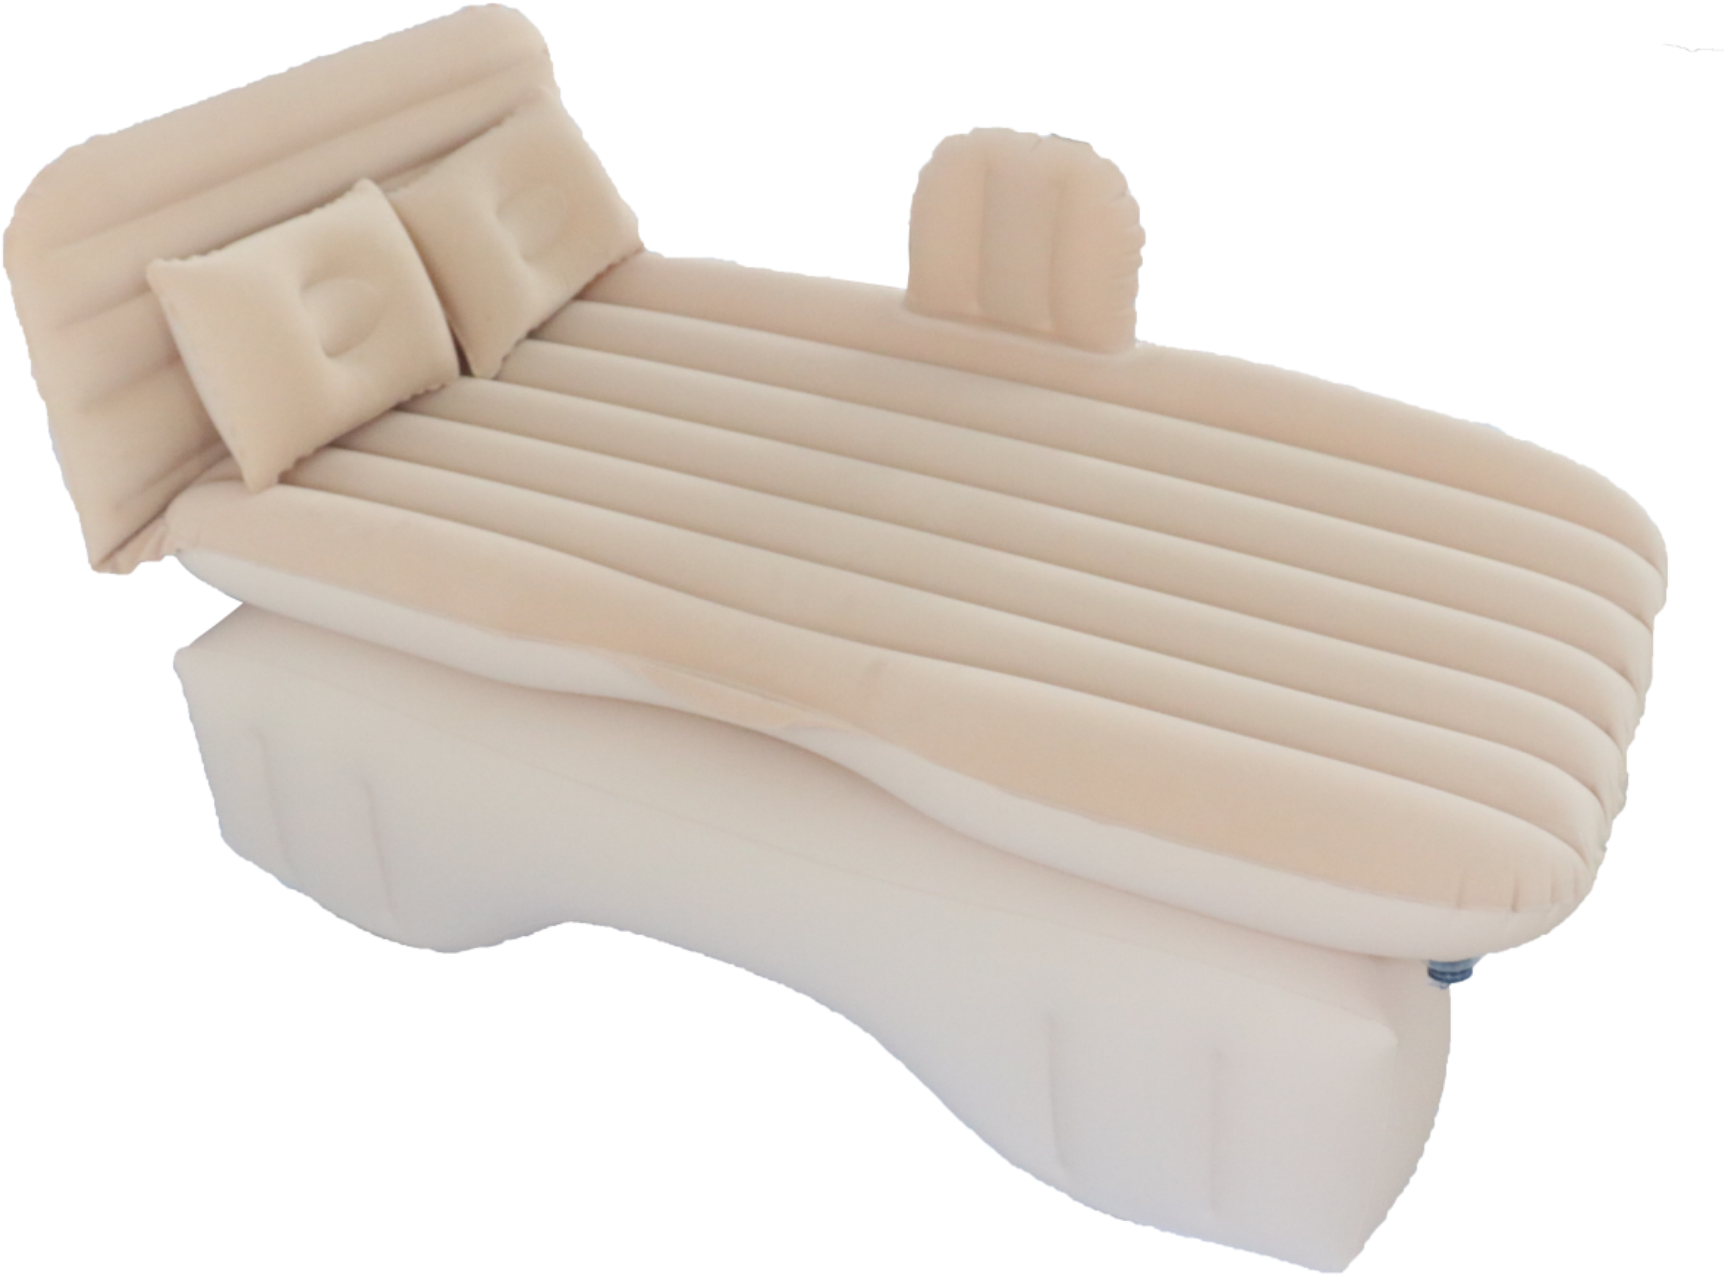 محمولة سرير الهواء مرتبة مضخة التضخم في الهواء الطلق سرير الهواء